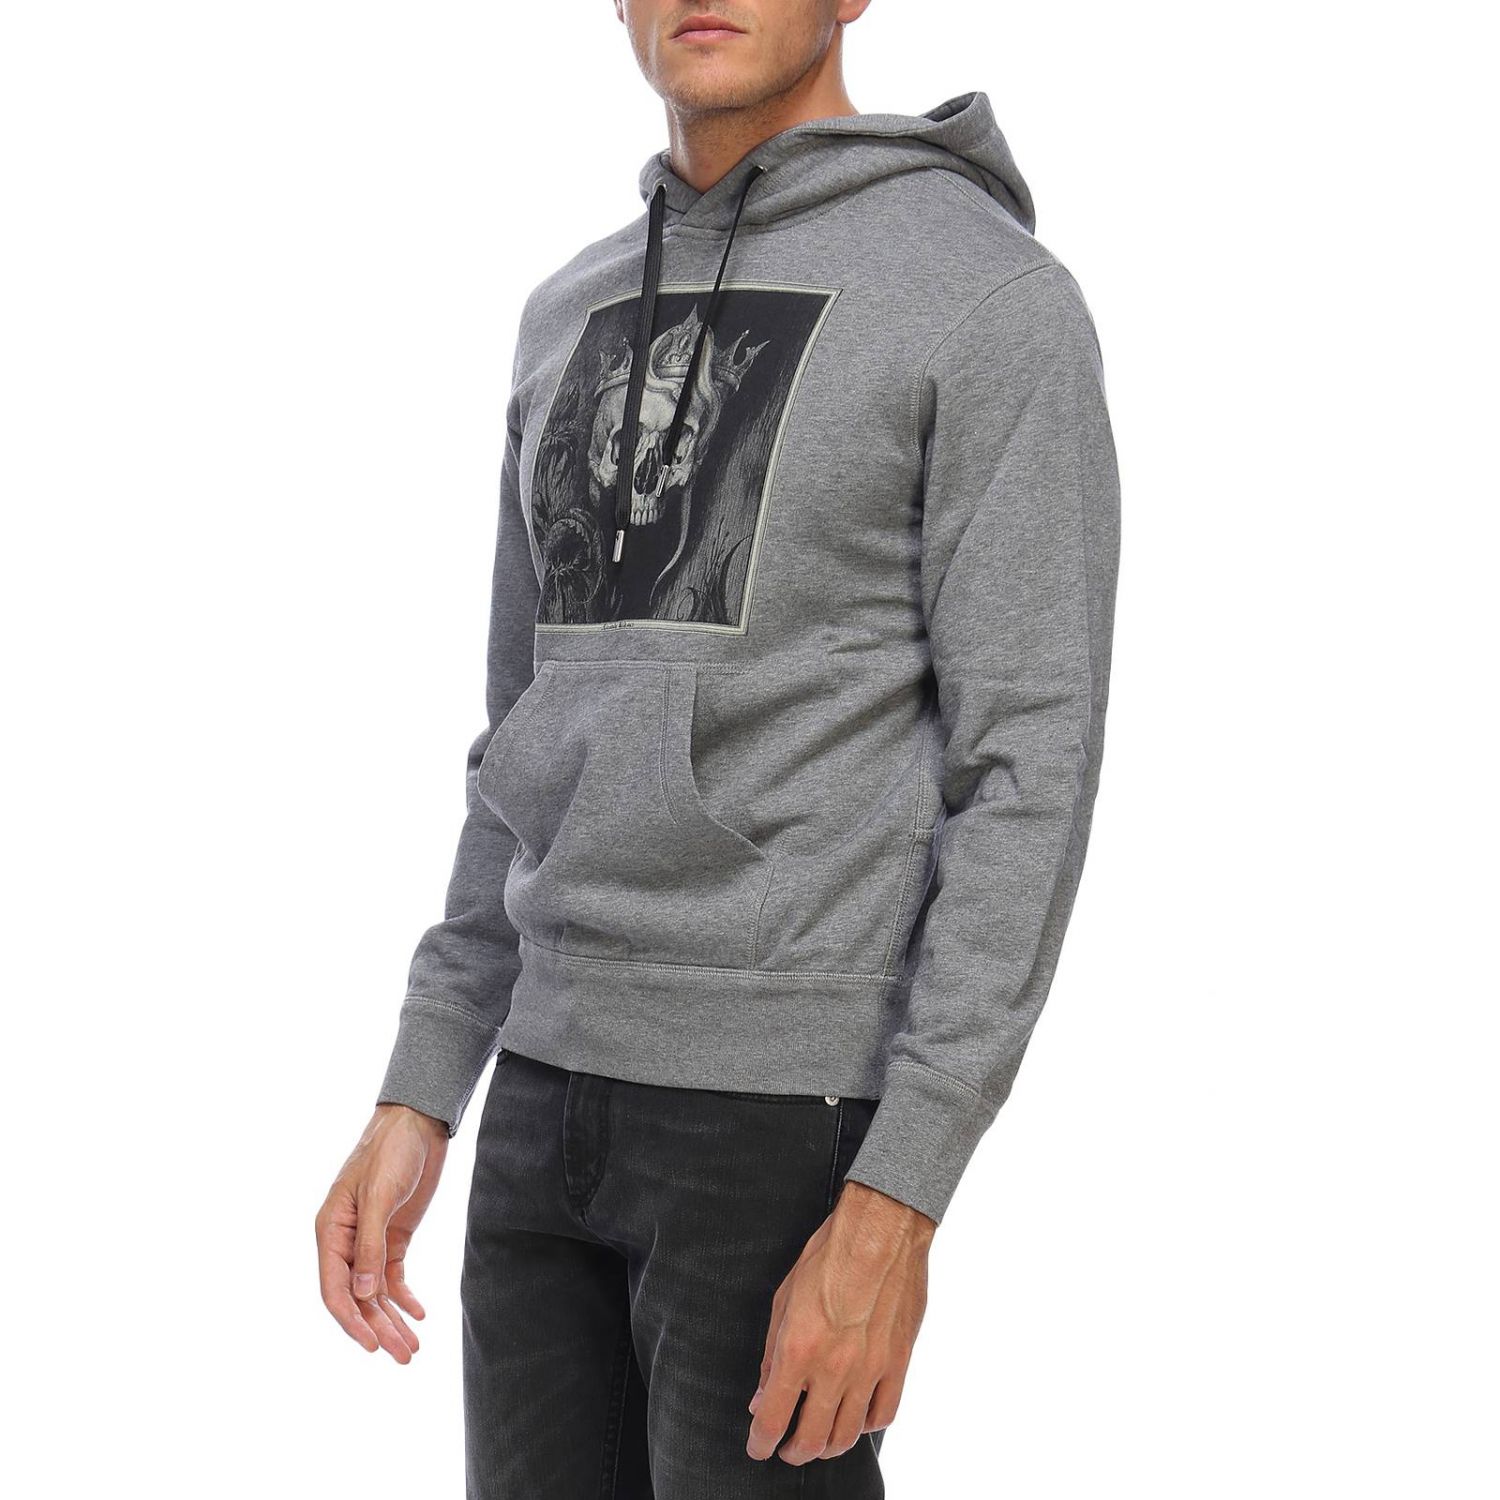 Mcq Outlet: Sweatshirt men ueen - Grey | Sweatshirt Mcq 520324 QLZ97 ...